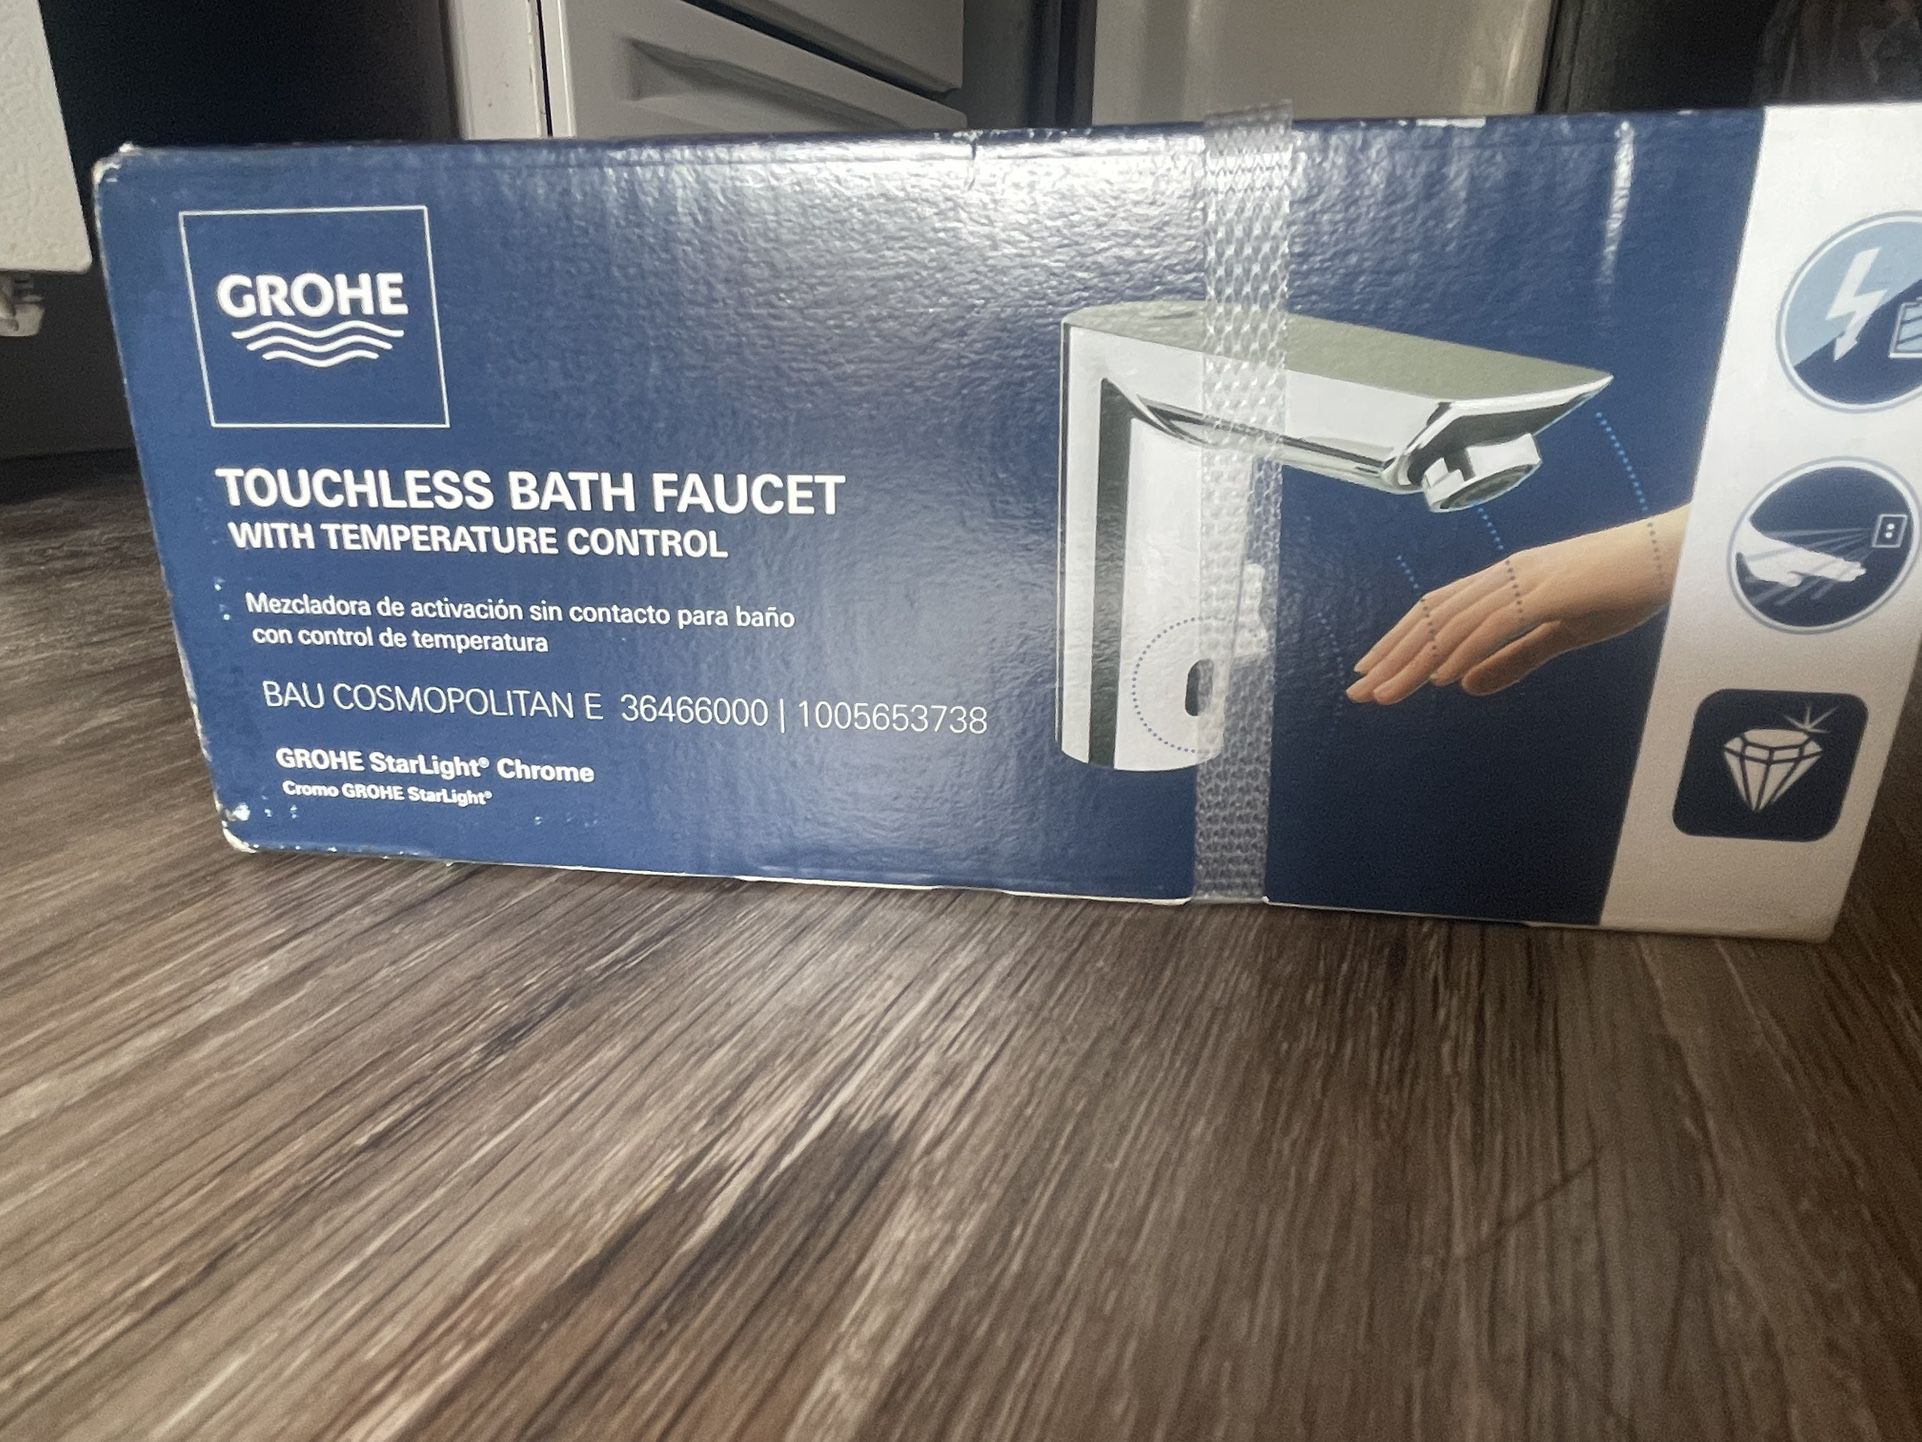 Touch less Bath Faucet